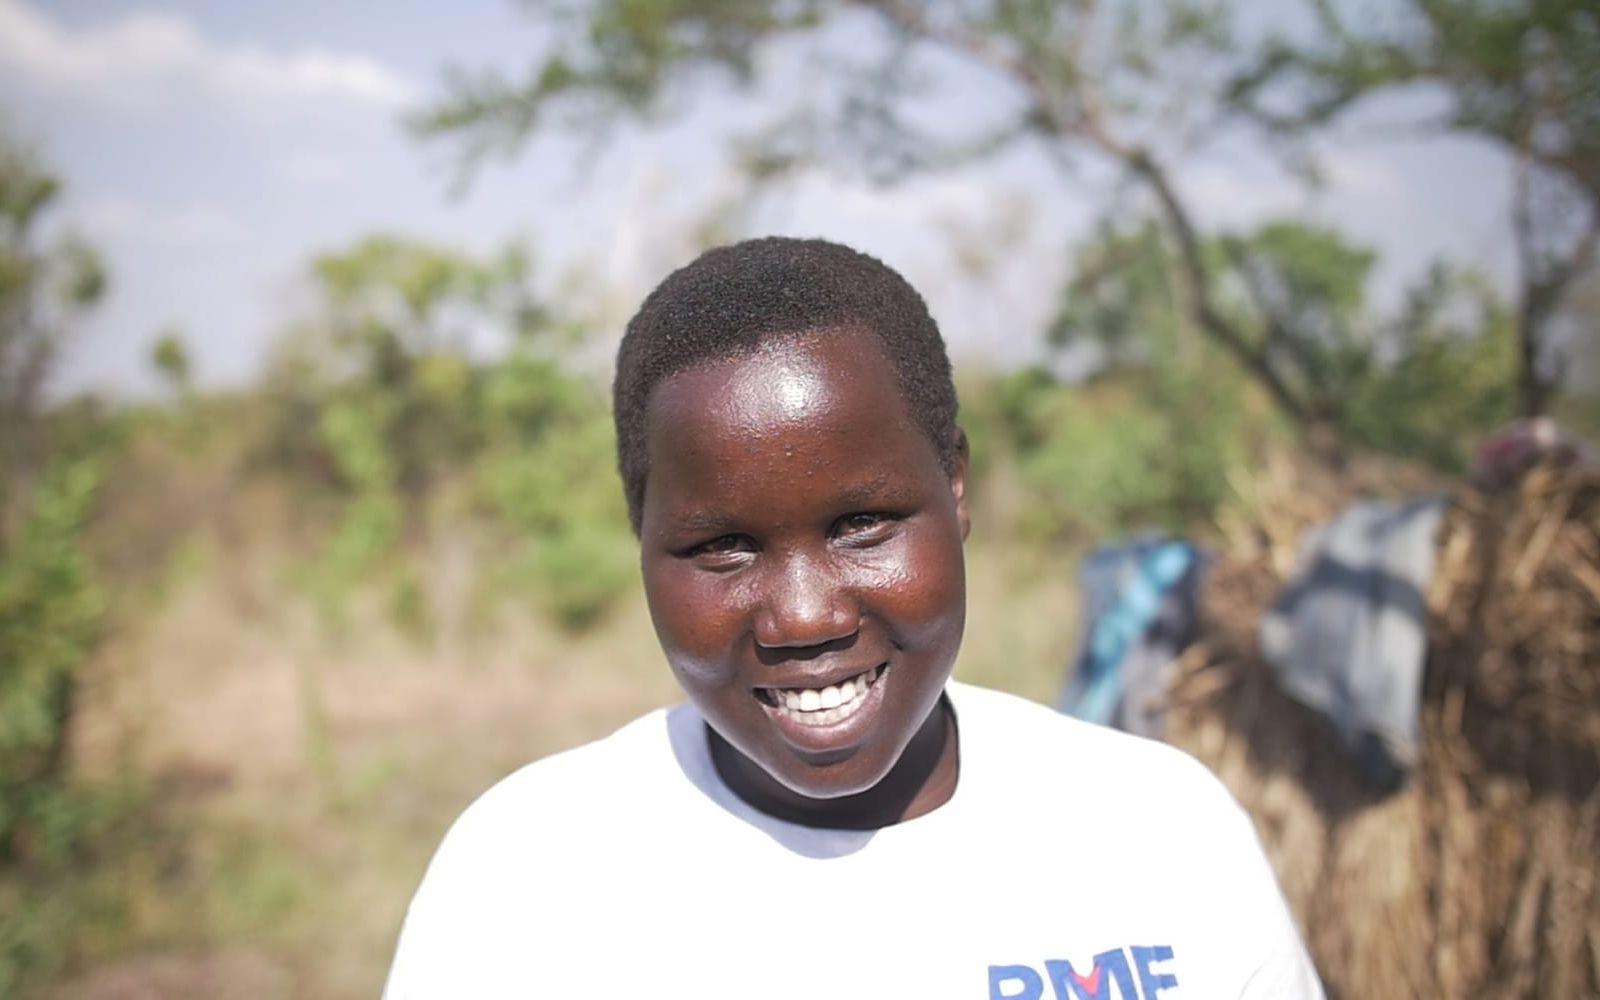 Betty, 19, arbetar som volontär och bor i flyktinglägret Bidi Bidi. Foto: Martin Bergh.